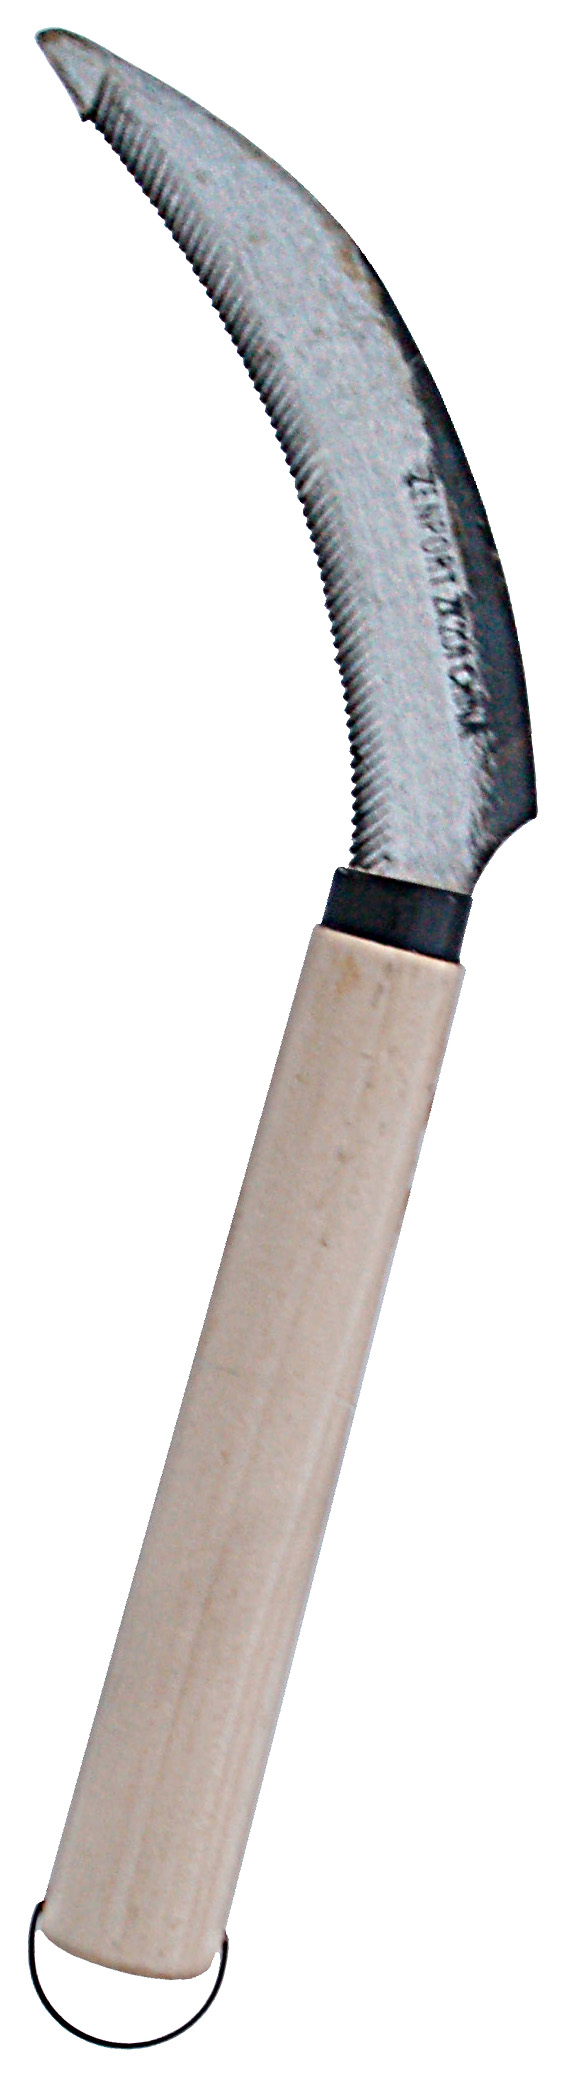 Zenport Faucille K201 hoz de cosecha/cuchillo para bayas, hoja dentada curvada de acero al carbono de 4.5 pulgadas